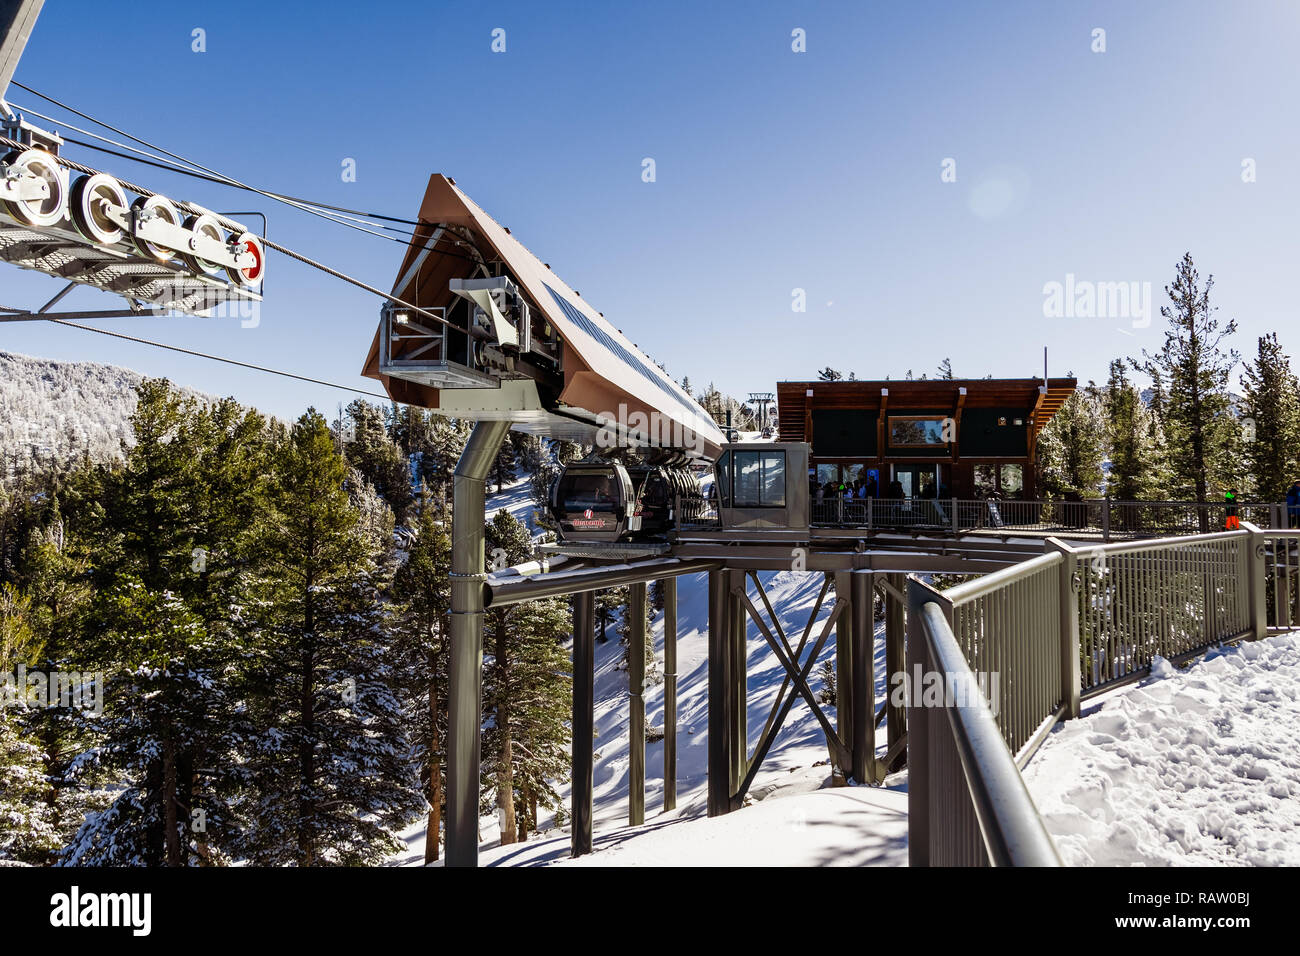 Décembre 26, 2018 South Lake Tahoe / CA / USA - Heavenly Ski Resort Gondola sur la plate-forme d'observation d'une journée ensoleillée Banque D'Images